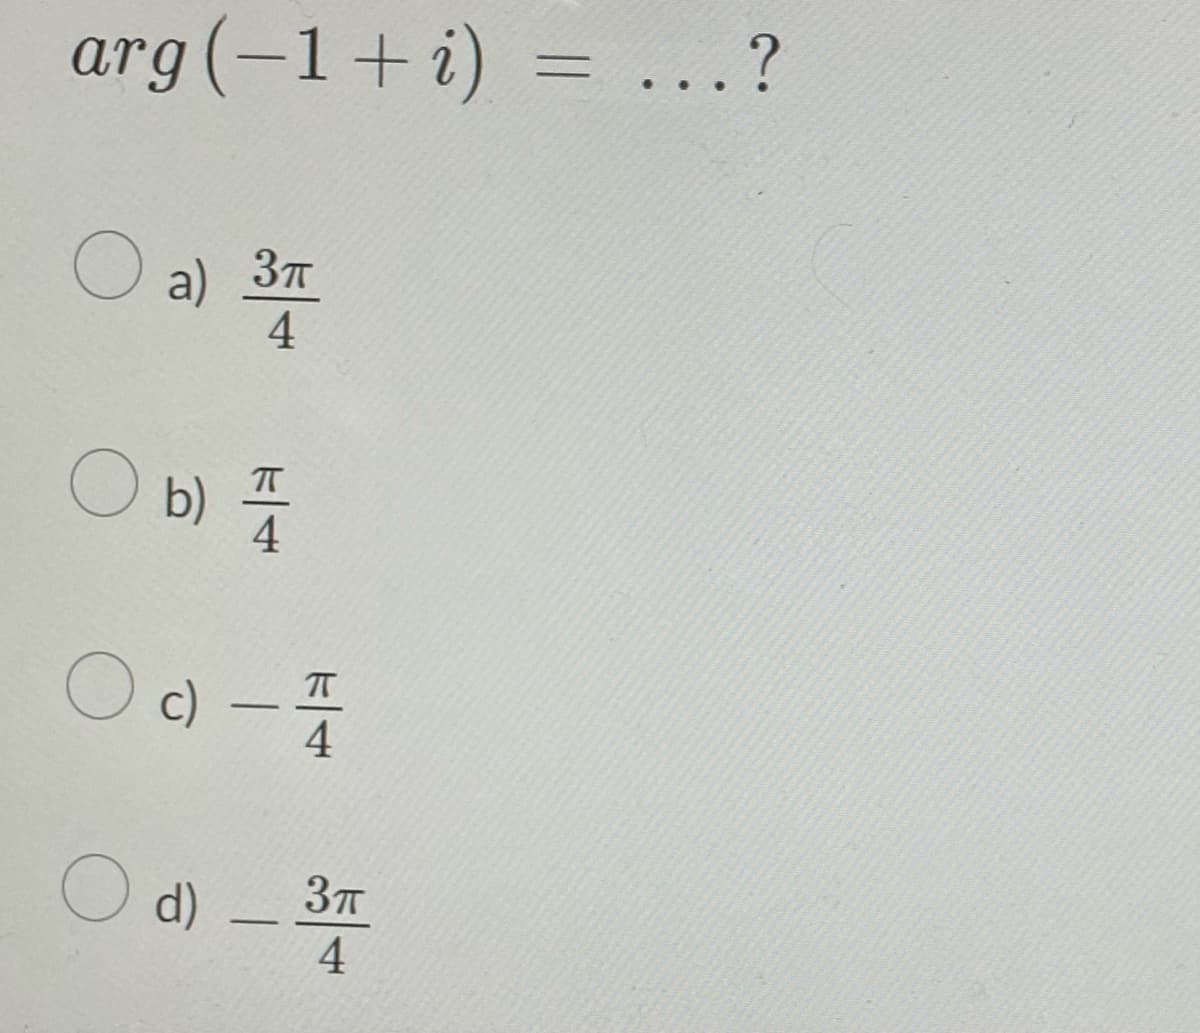 arg (-1+i)= ...?
O a) 31
4
O b) A/
4
Od - 1/12
O d) - 34